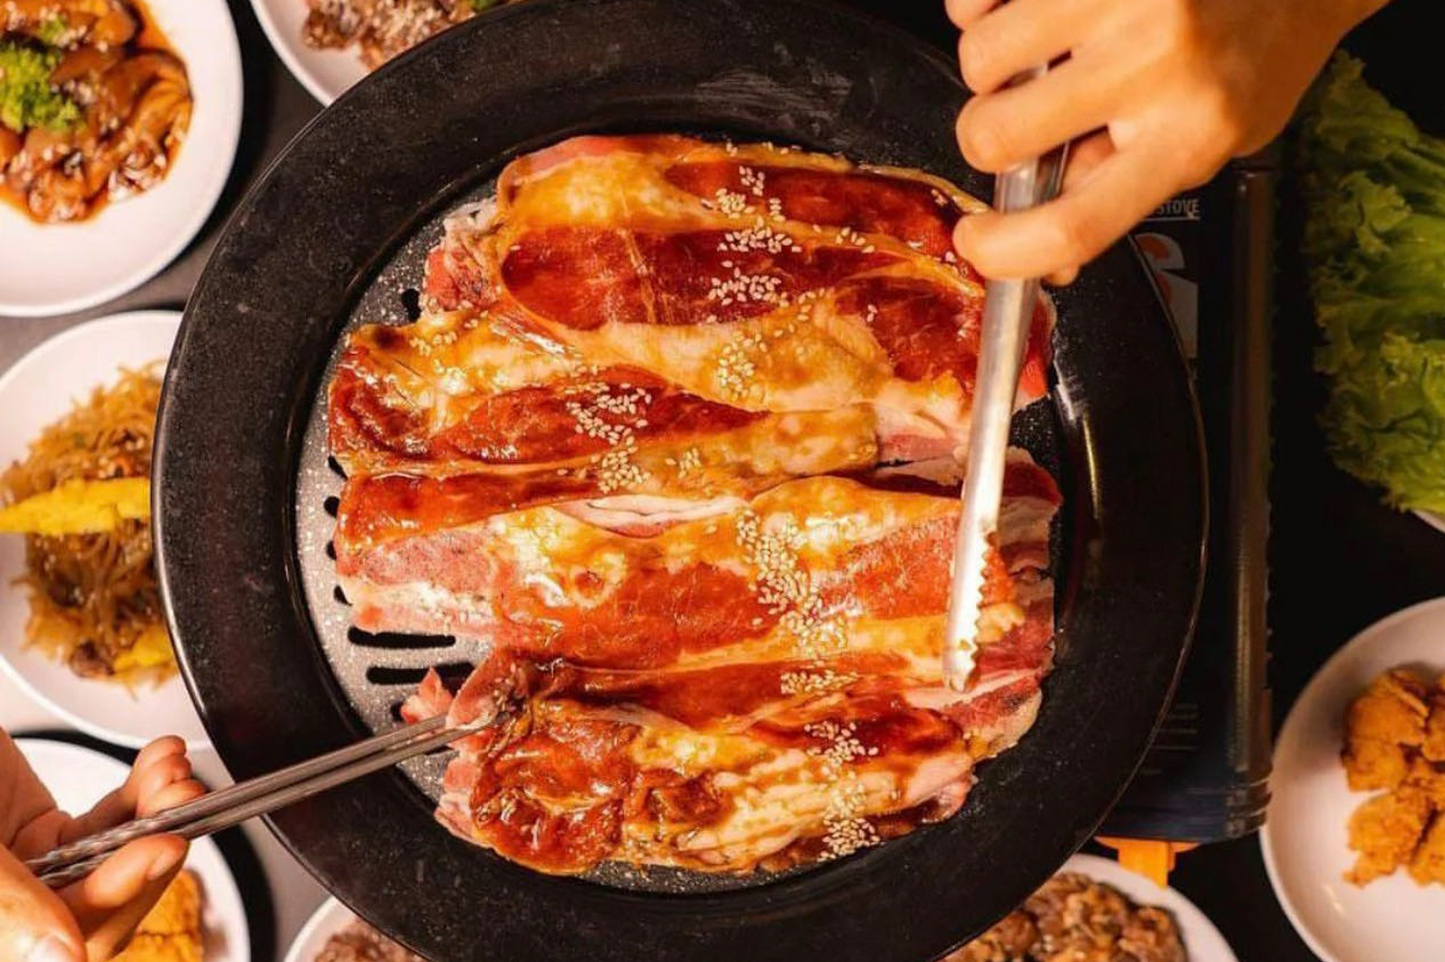 韓式炭火燒烤食材包：腌制系列 고기구이